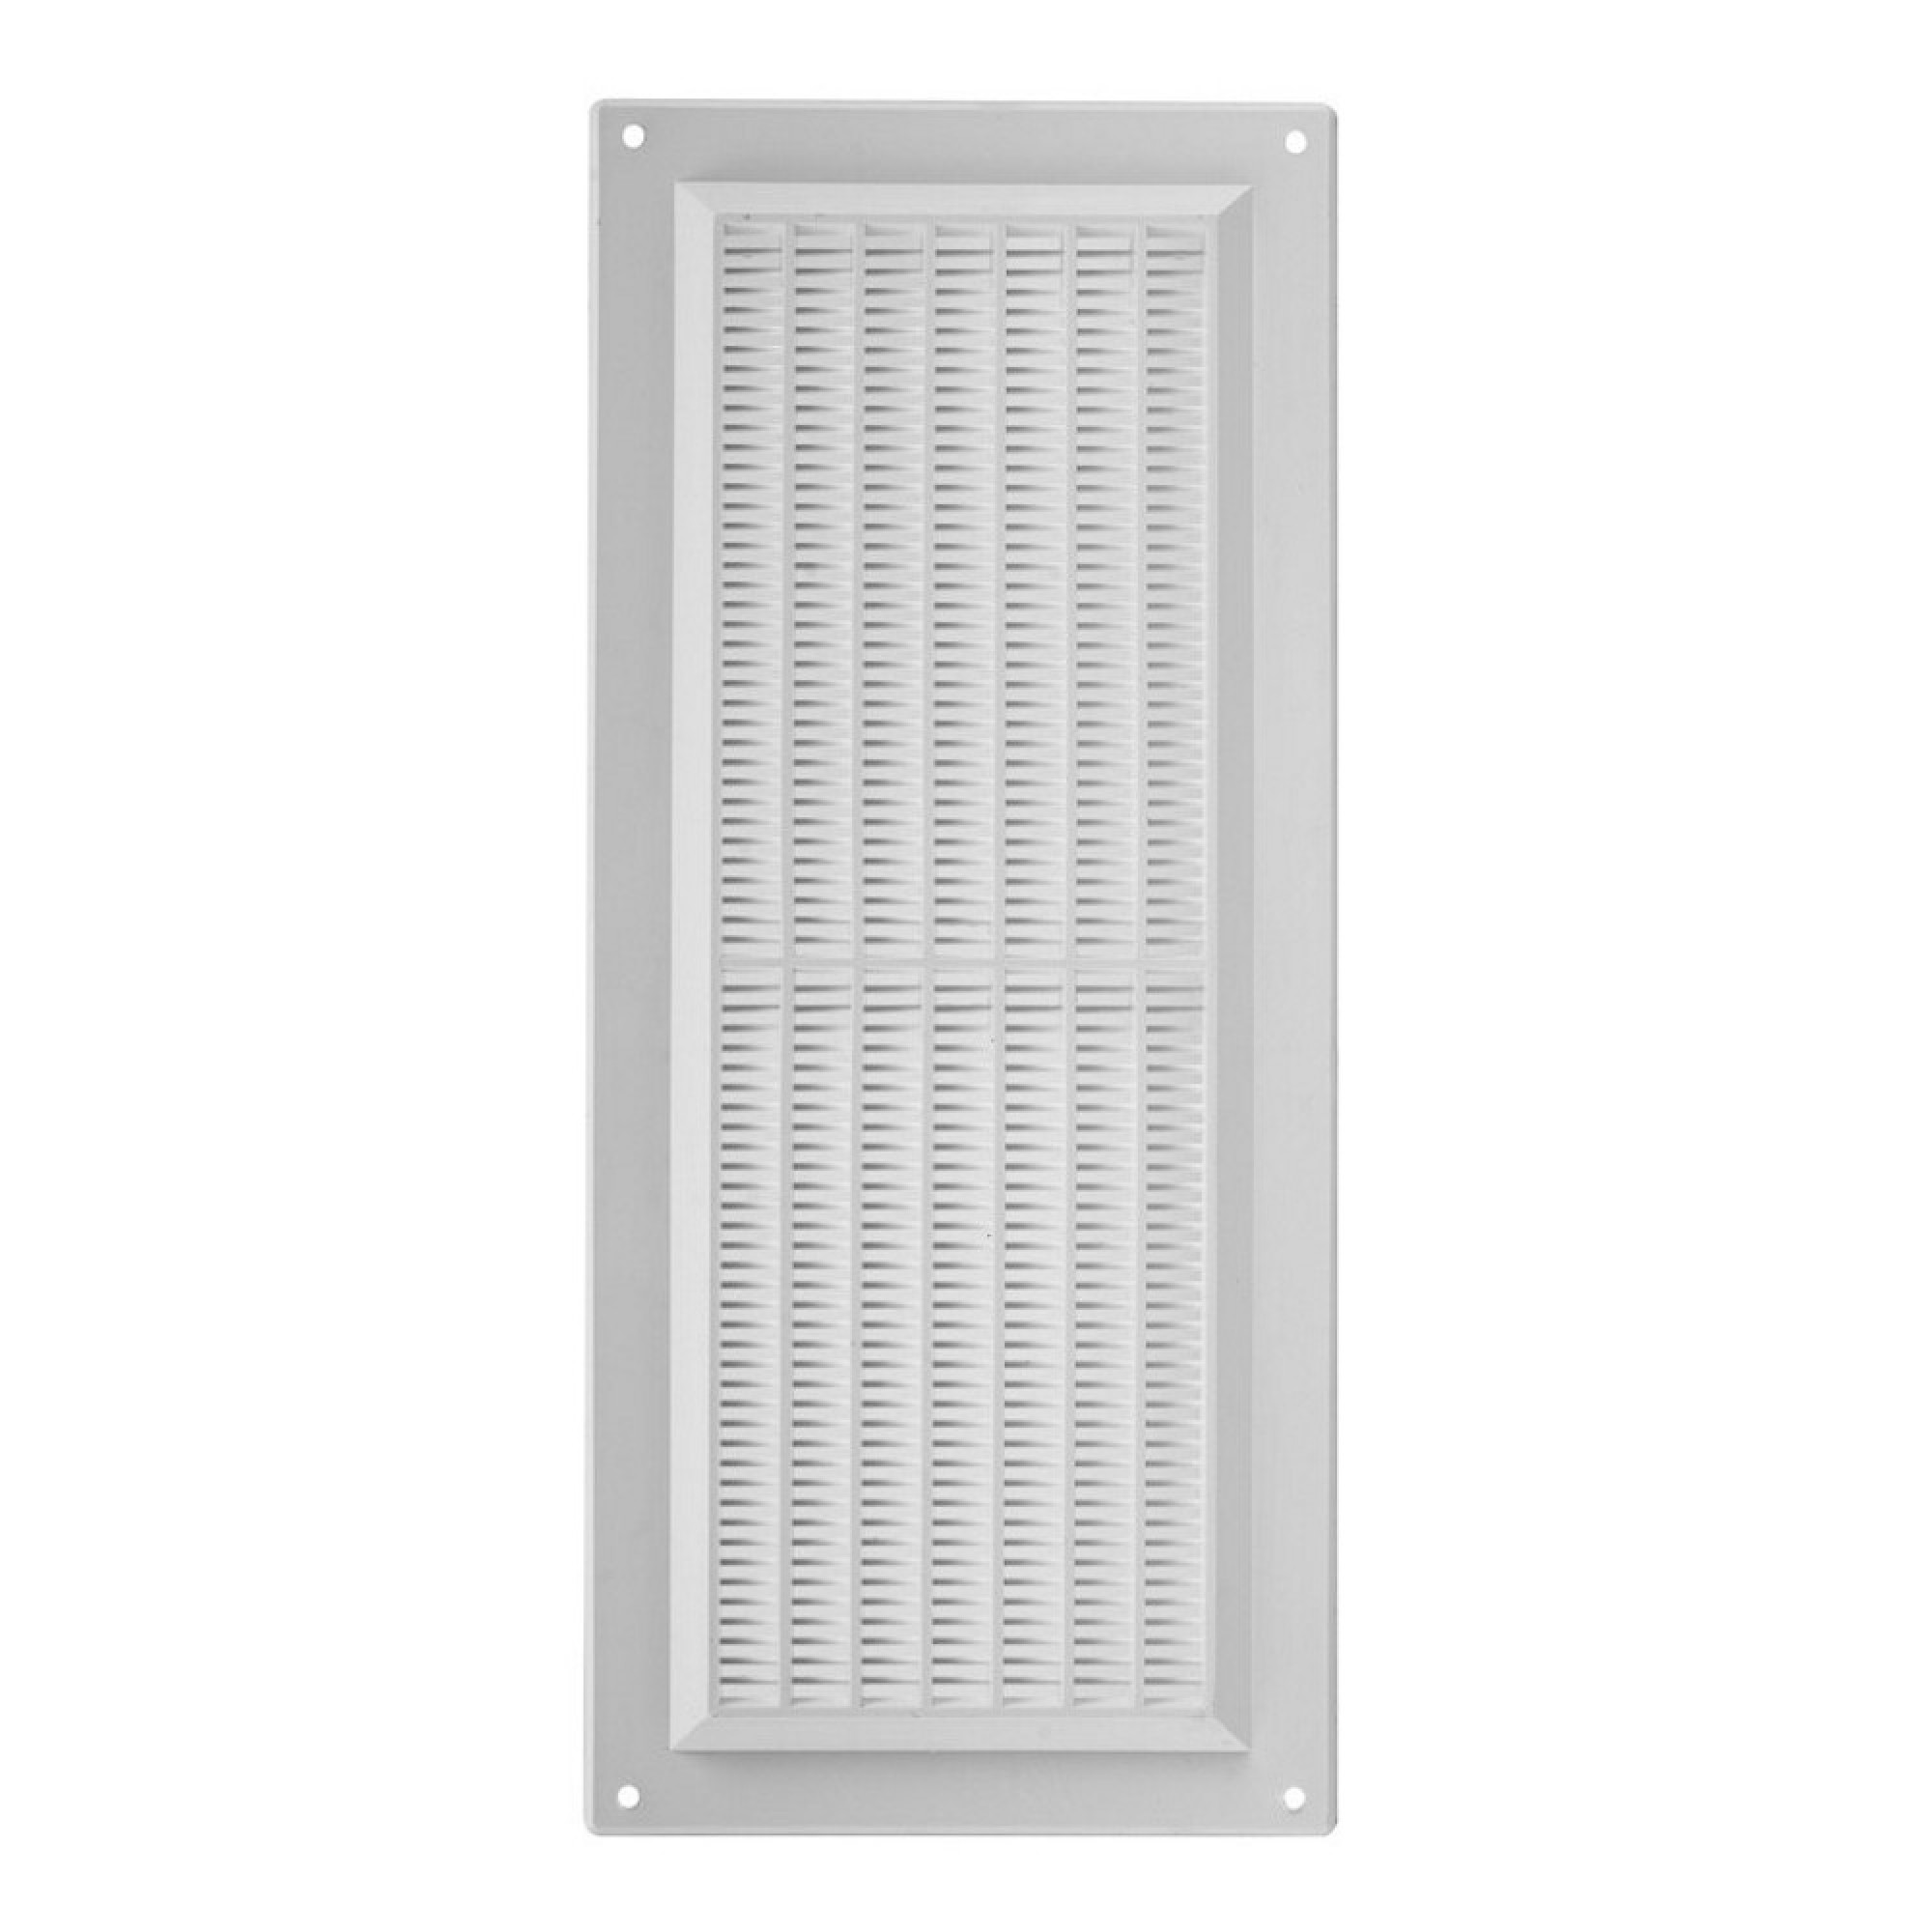 Sisteme de ventilatie - Grila dreptunghiulara pentru ventilatie PVC, alb, 130 x 300 mm, profiline.ro